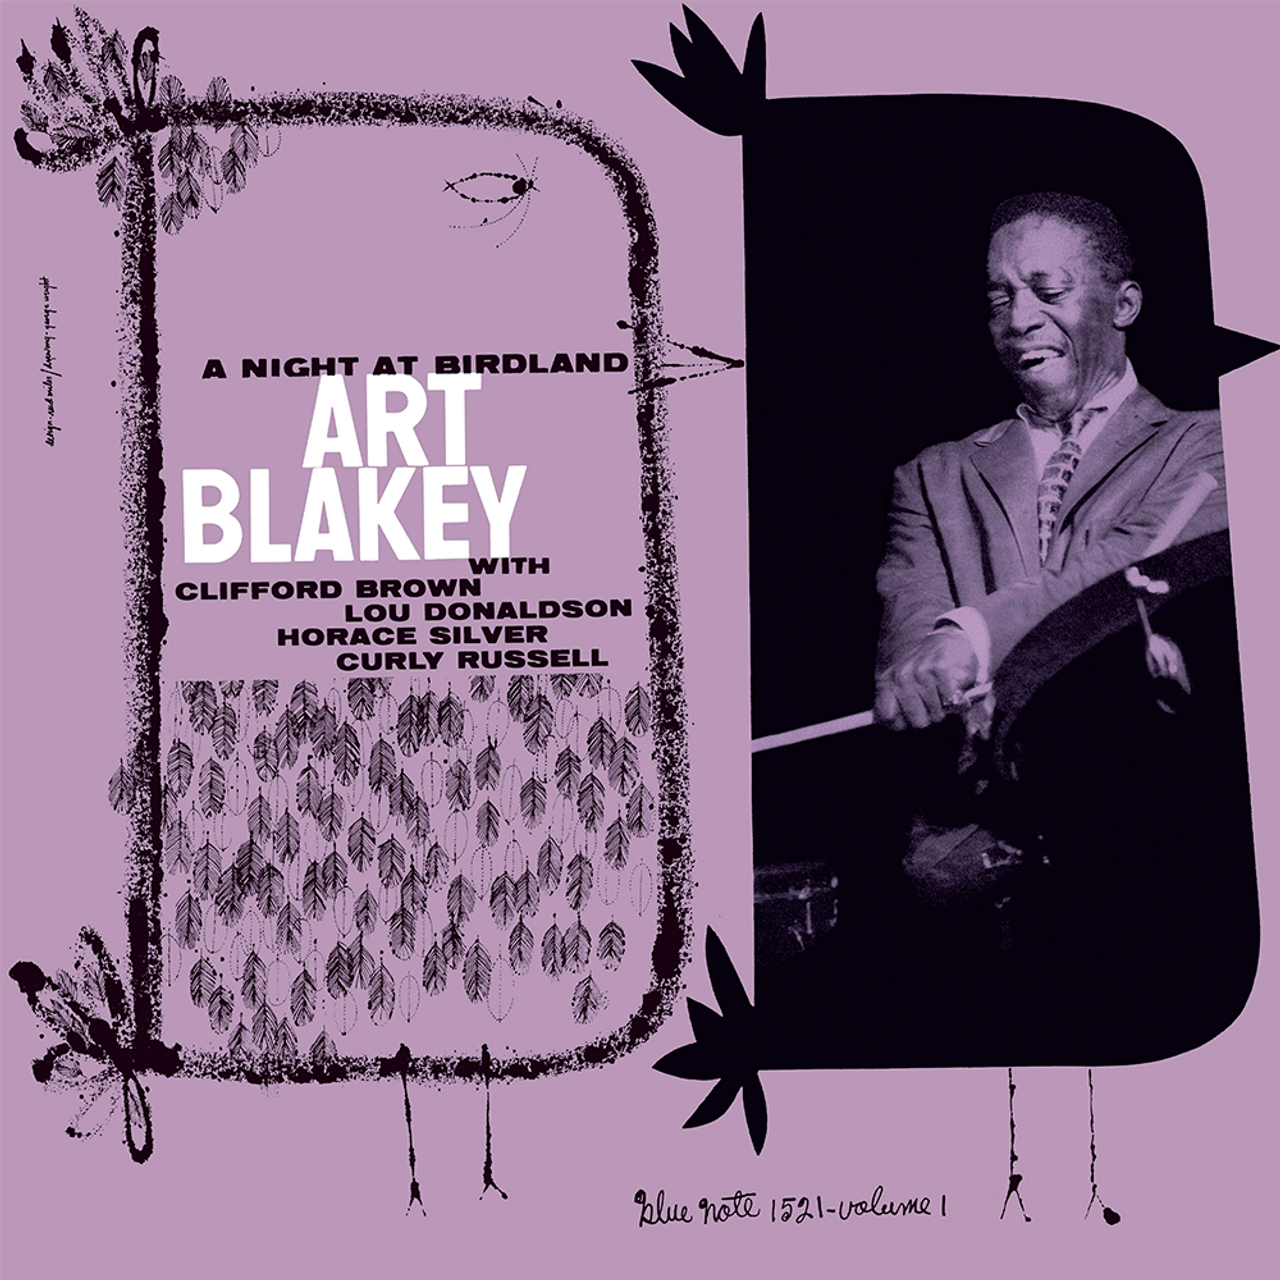 Art Blakey - At Birdland with Art Blakey Quintet V.1 (10in)